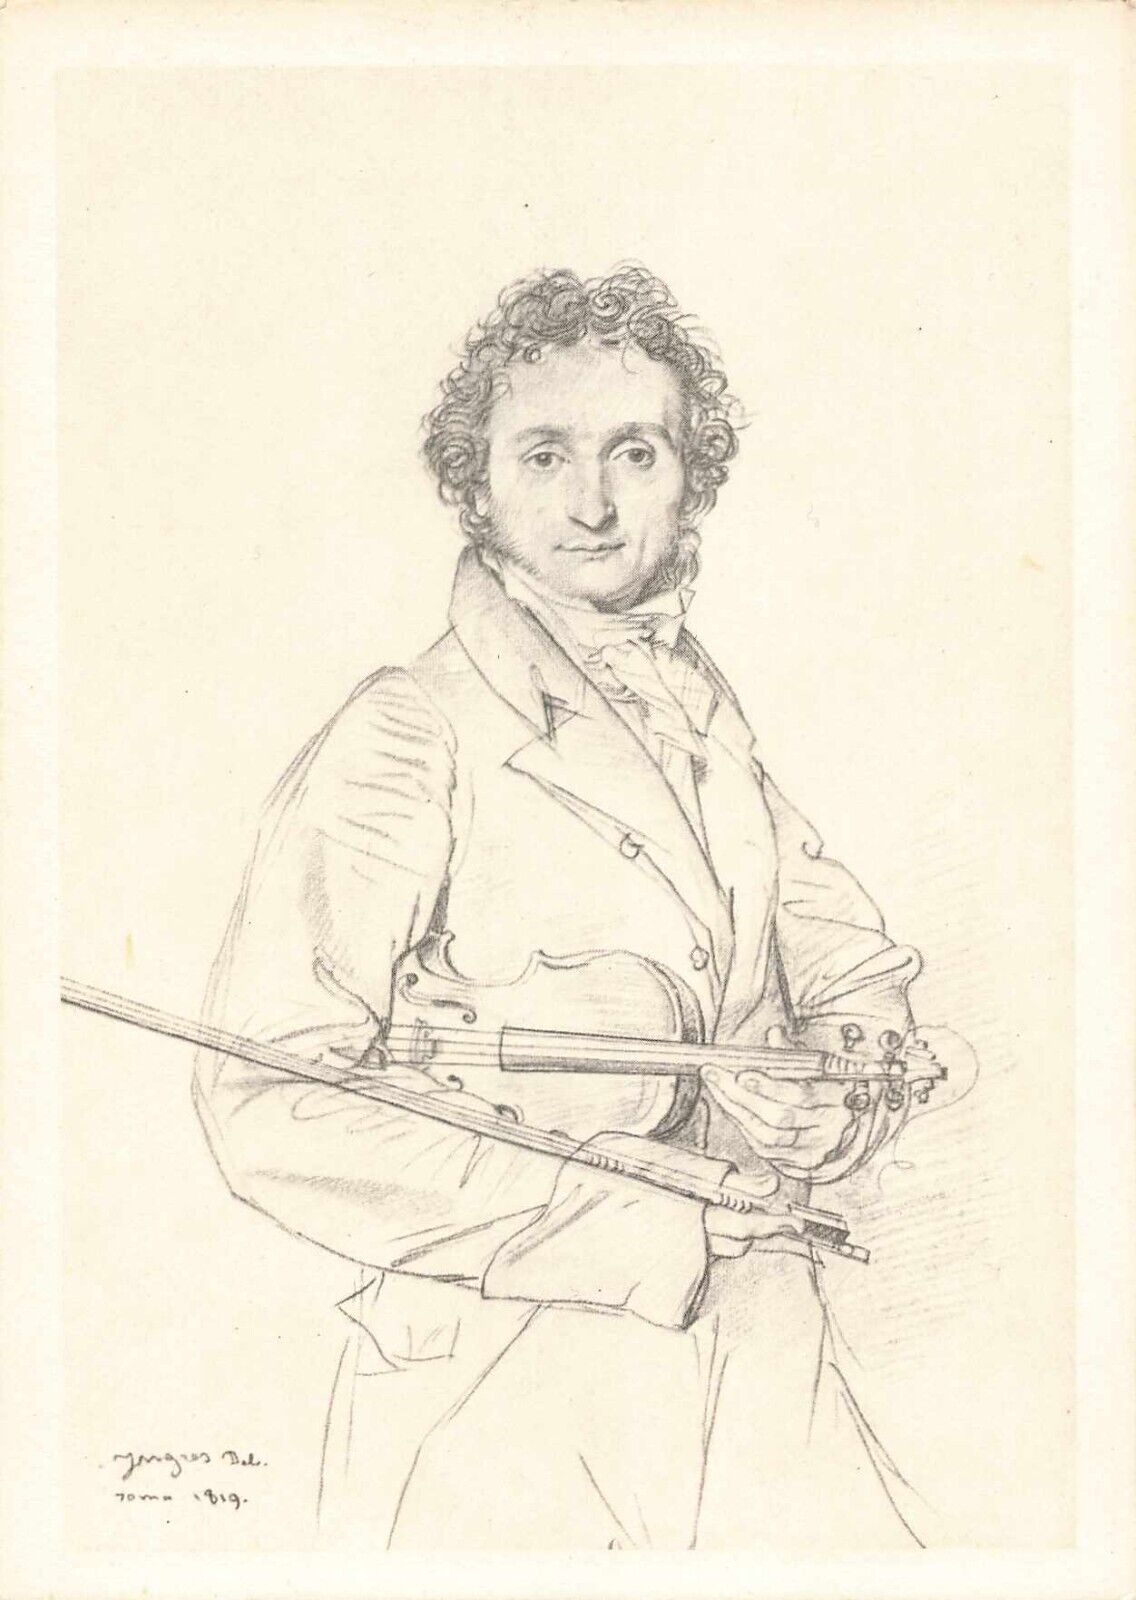 Postcard Niccolò Paganini Italian Composer Violin Virtuoso 1782-1840